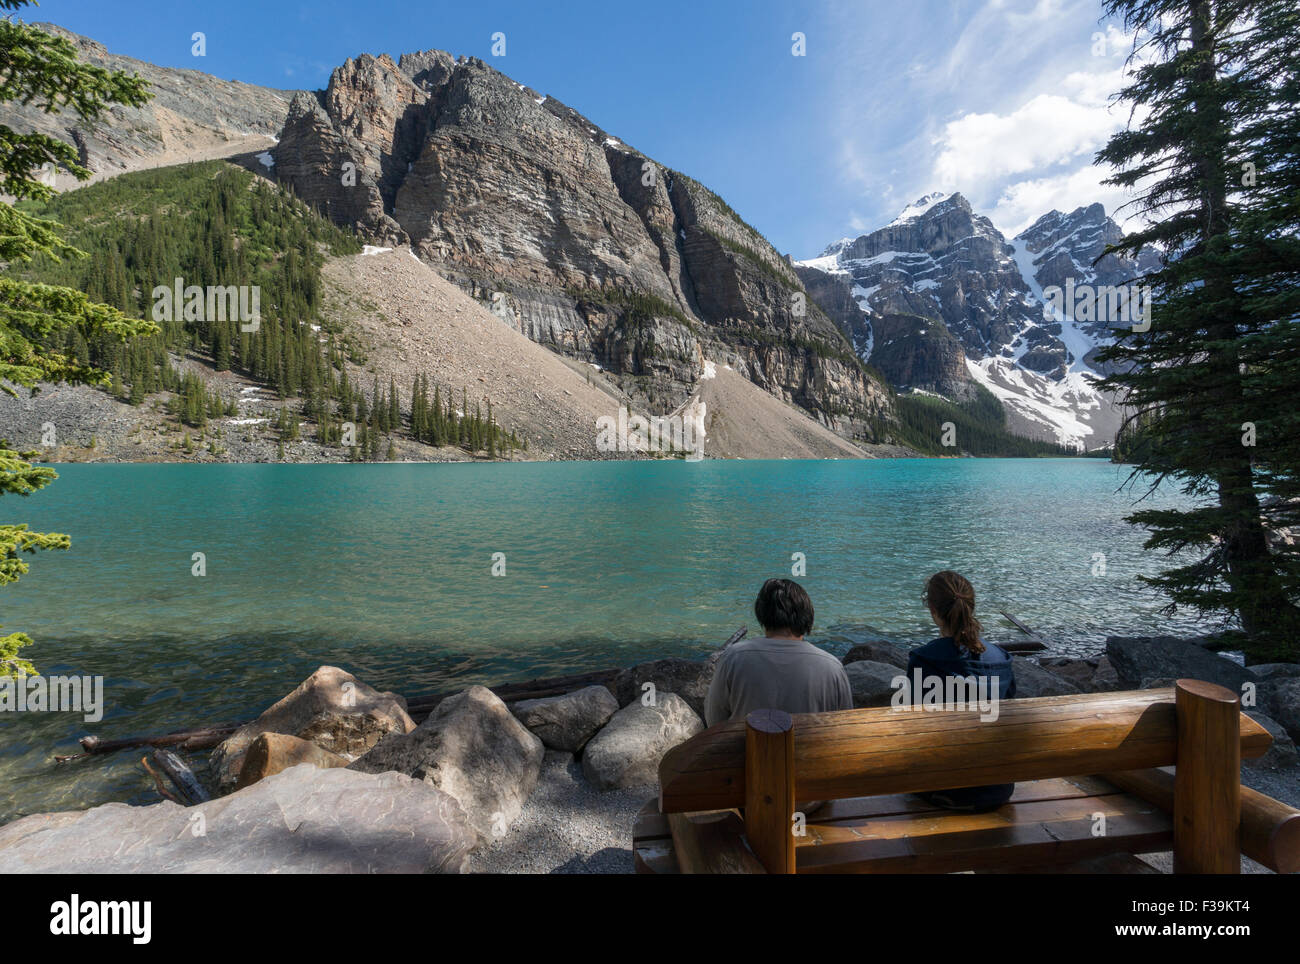 Deux personnes par le lac Moraine, parc national Banff, Rocheuses canadiennes, l'Alberta, Canada Banque D'Images